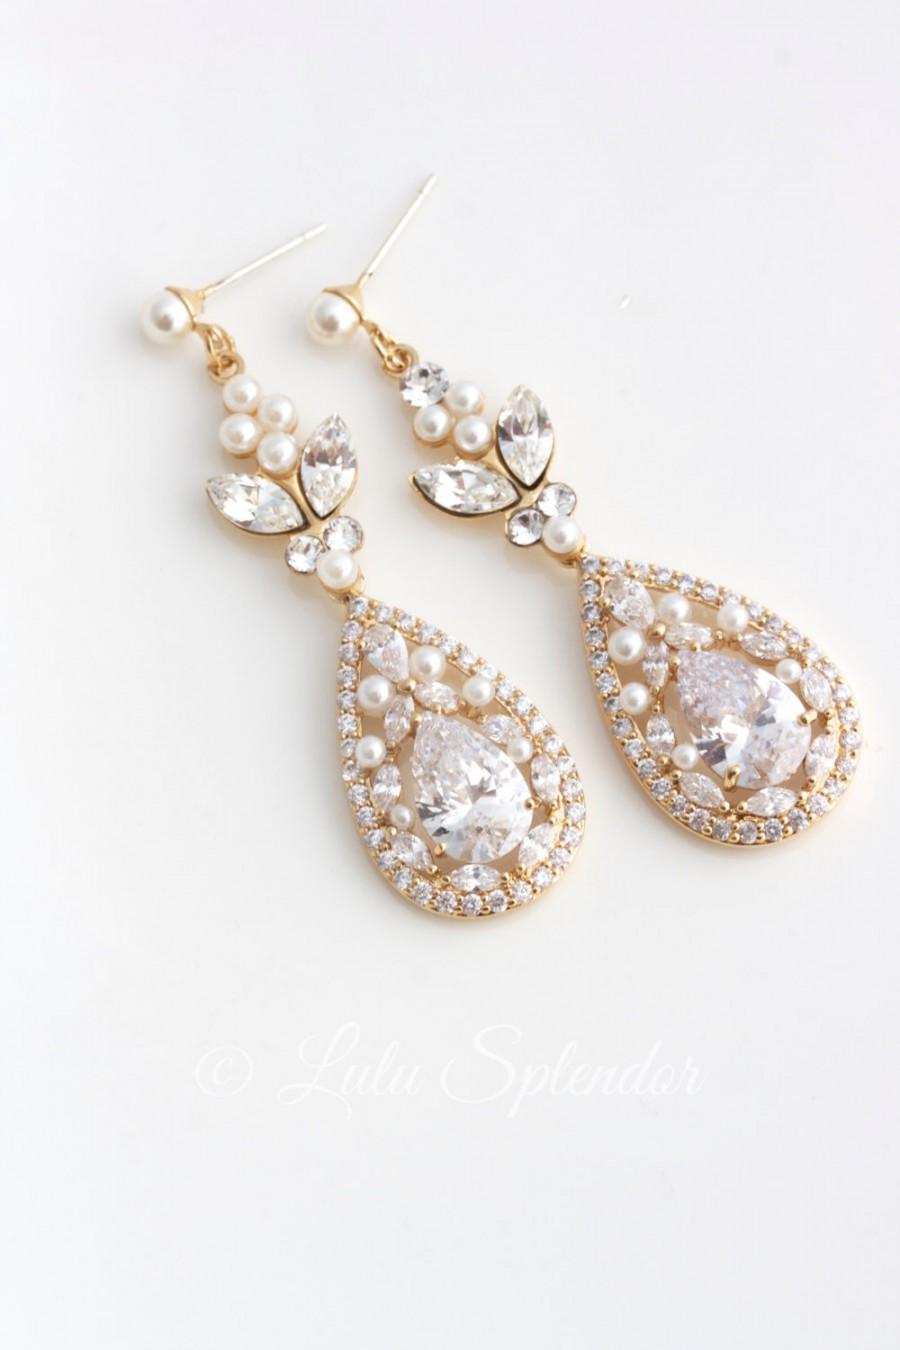 Hochzeit - Gold Bridal Earrings Long Wedding Earrings Cubic Zirconia Teardrop Wedding Jewelry Swarovski Crystal Wedding Jewelry VIVIENNE